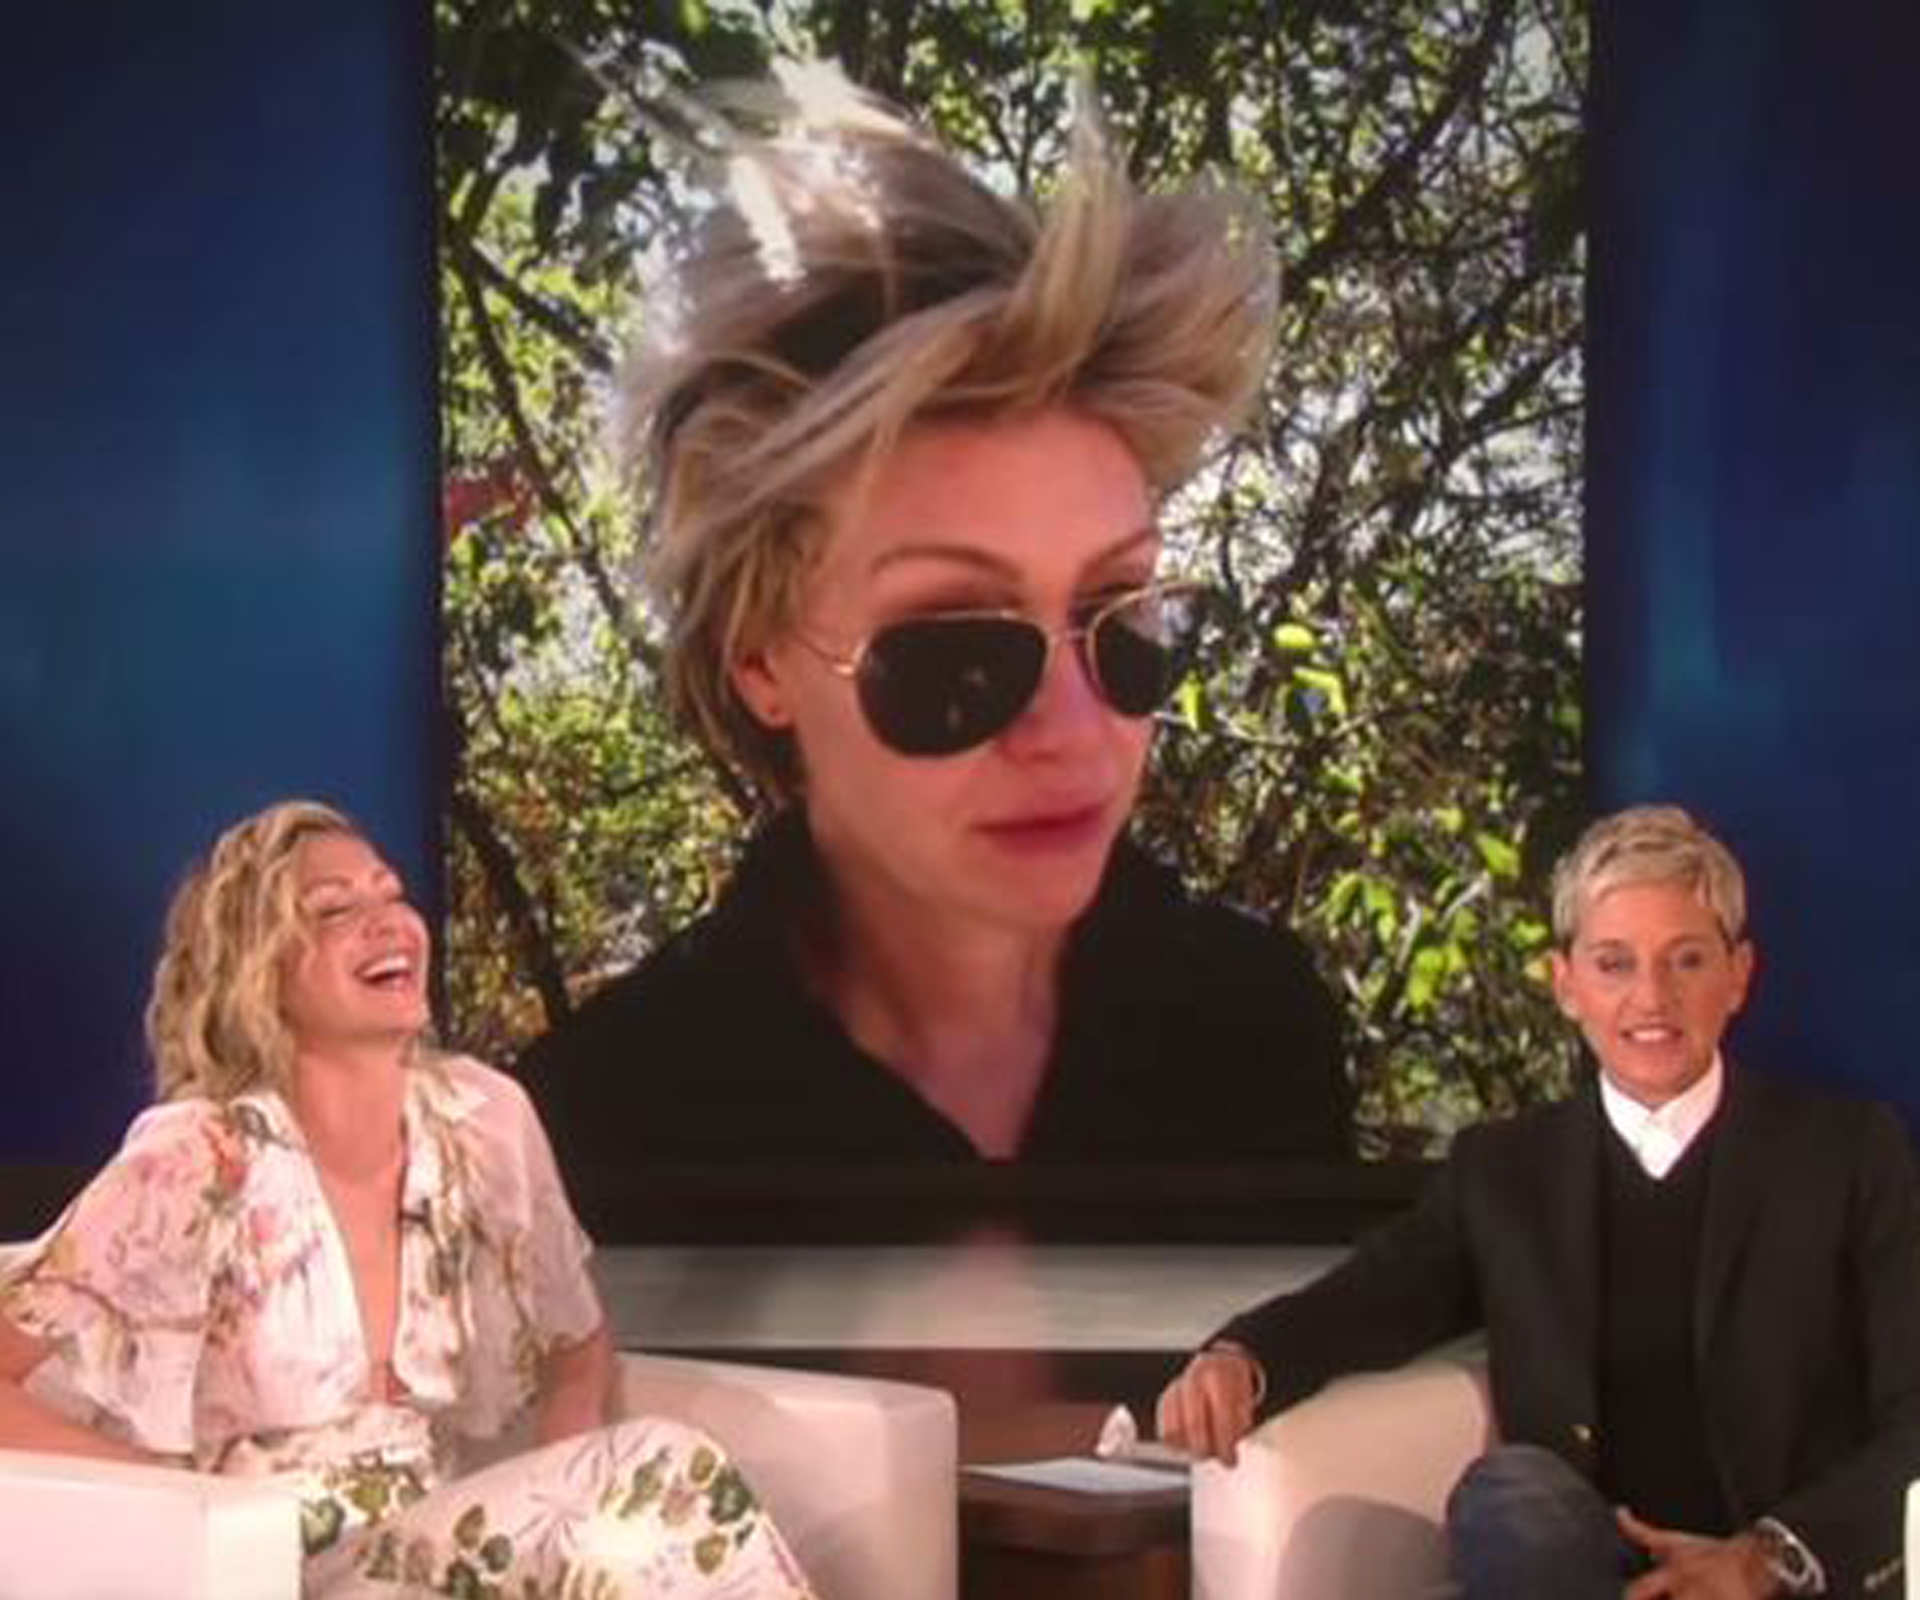 WATCH: Ellen DeGeneres embarrasses Portia de Rossi with bad hair photos